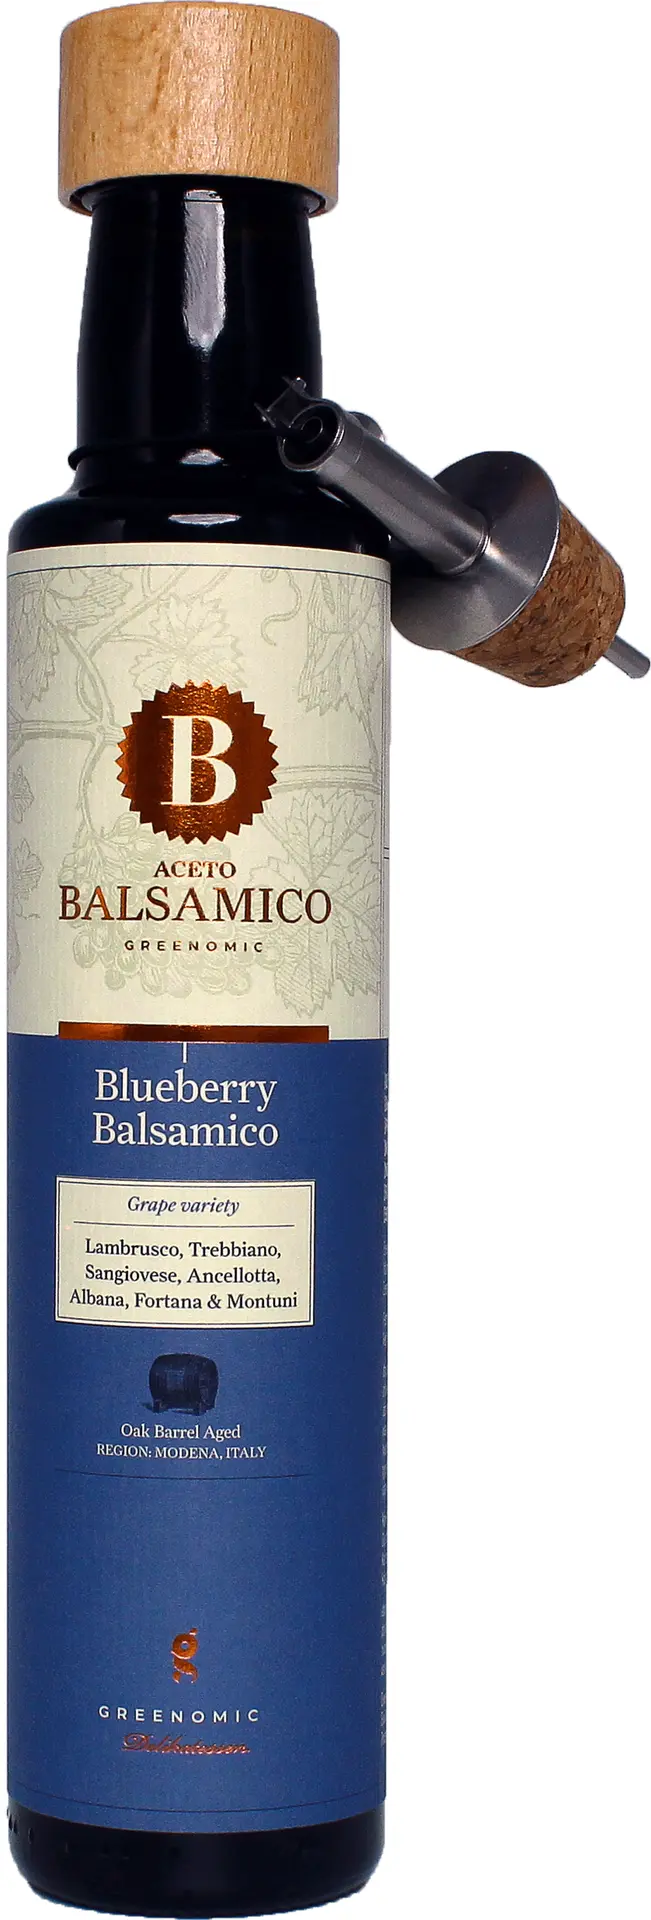 GREENOMIC - Greenomic – Aceto Balsamico mit Blueberry + Ausgießer - Balsamico-Essig in Premium-Qualität aus Italien